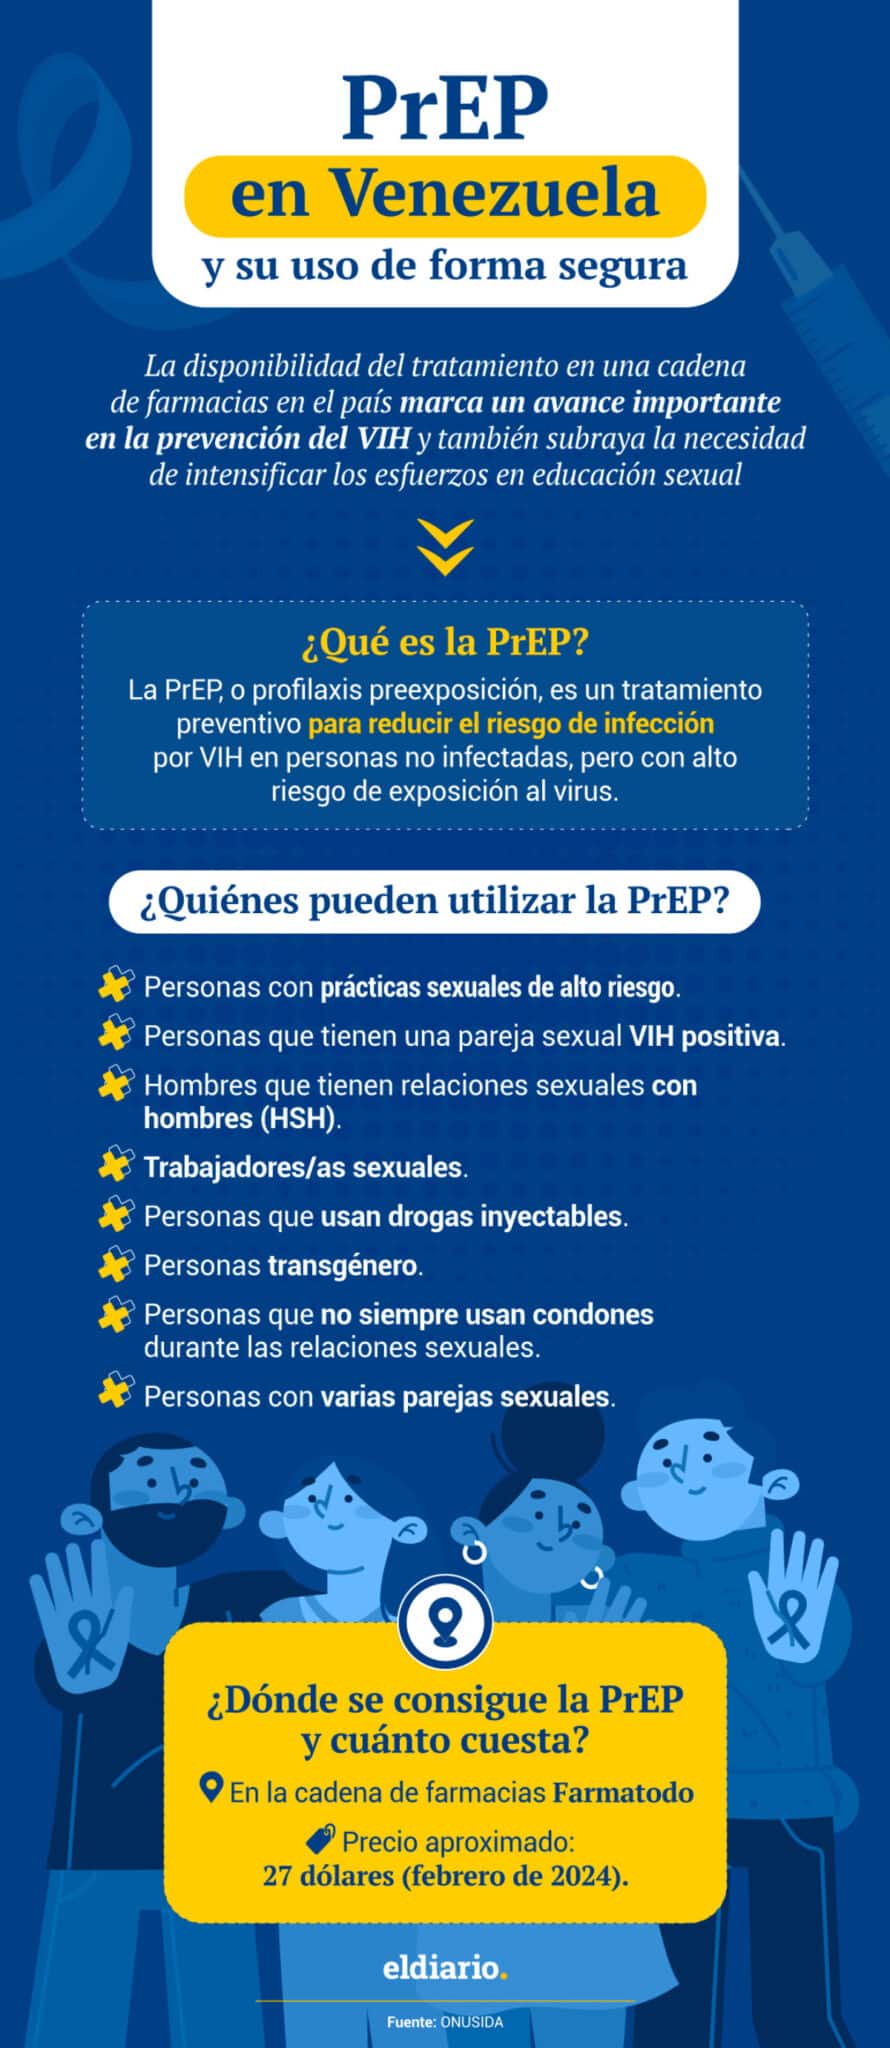 PrEP en Venezuela: quiénes pueden utilizarlo y qué aconsejan los especialistas en VIH sobre su uso